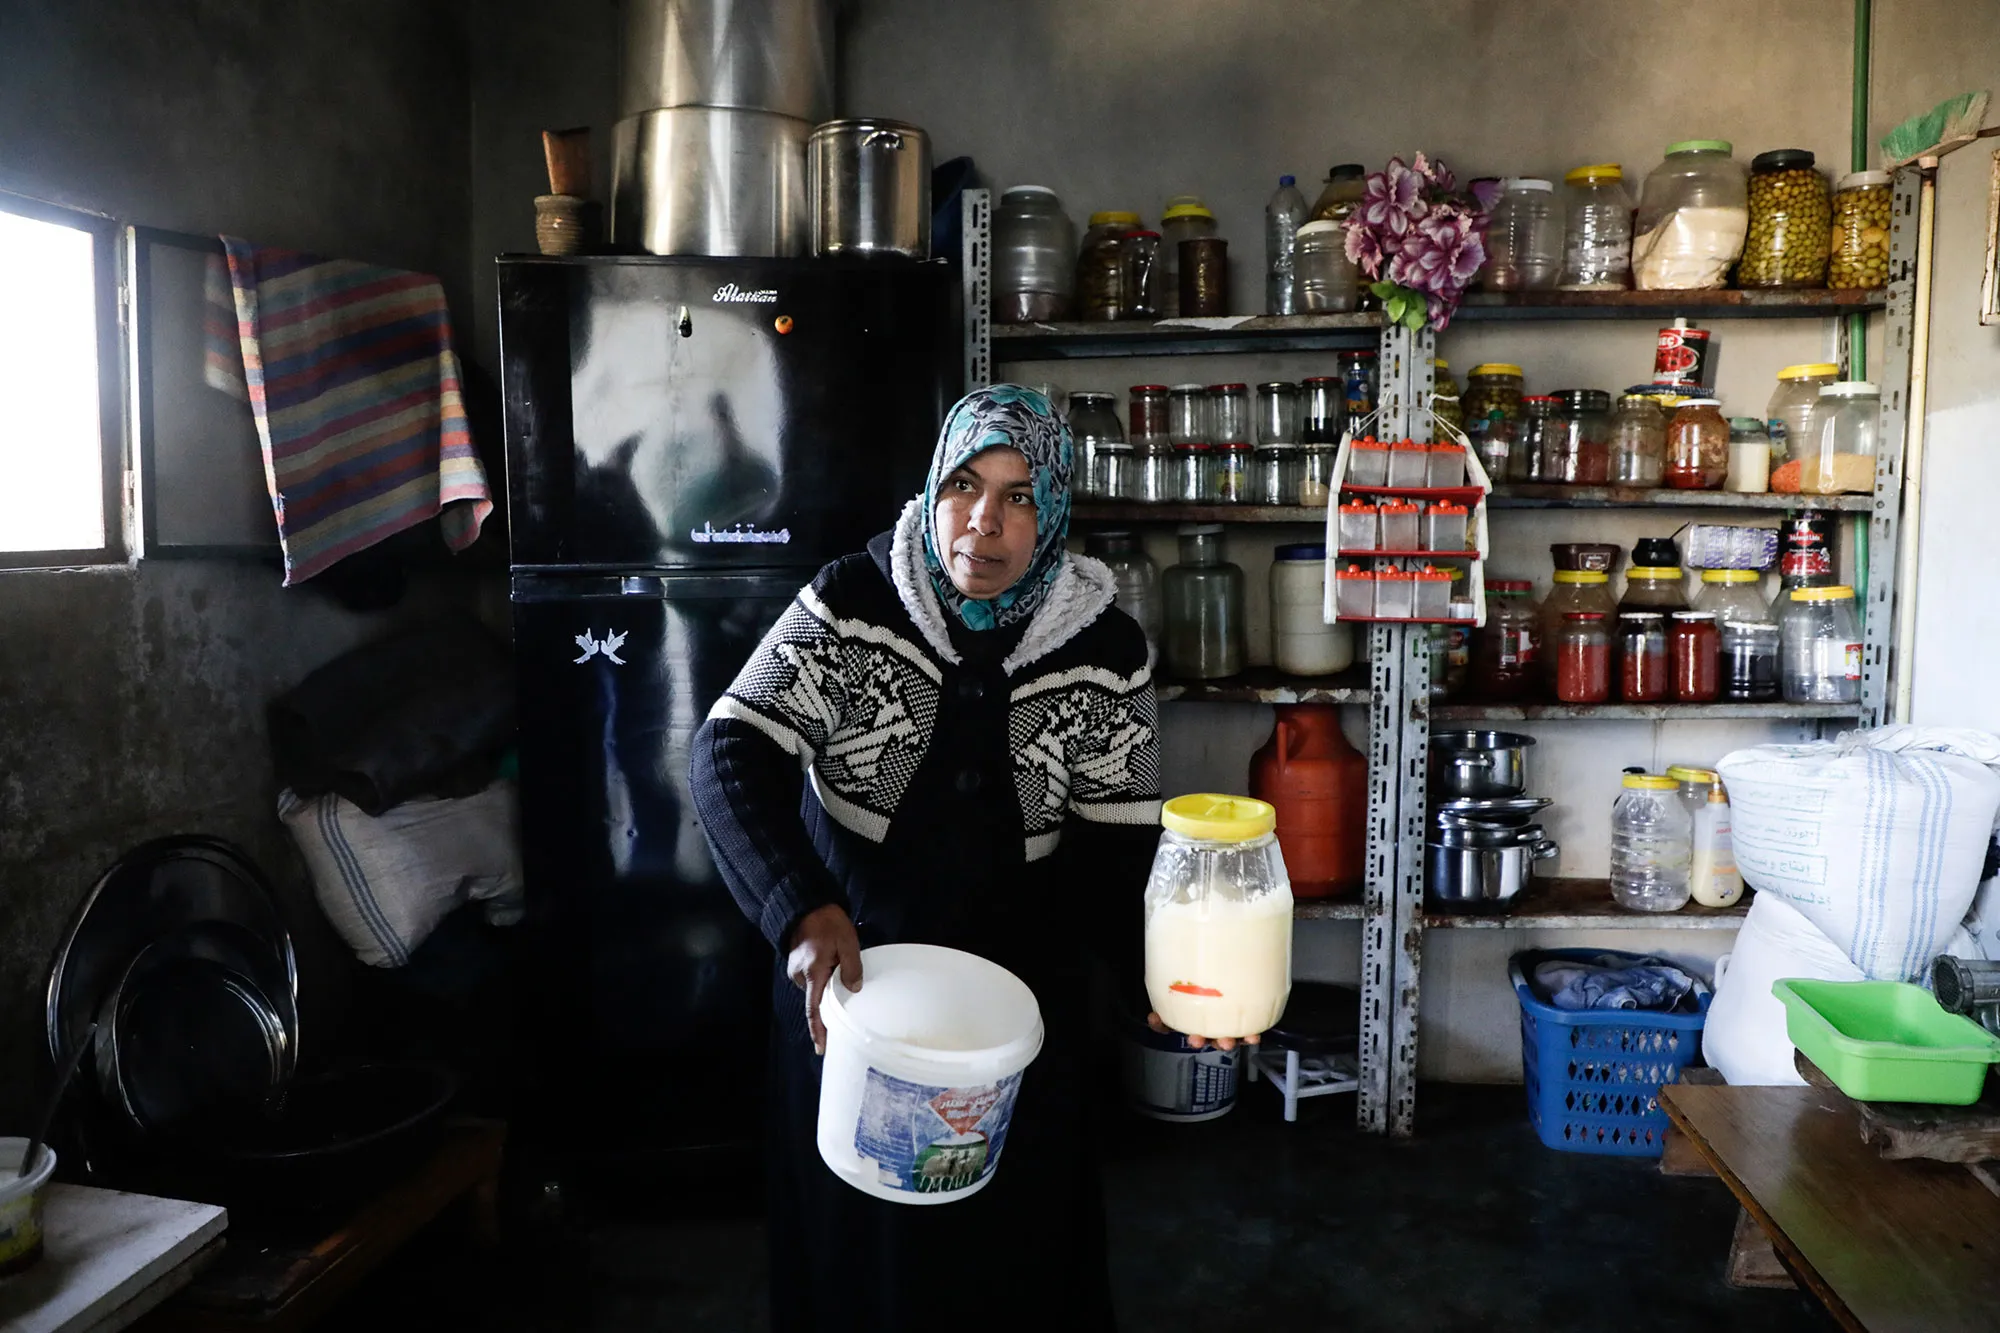 Com o apoio da CARE para mulheres, como parte do Consórcio de Resiliência da Síria, Salma recebeu treinamento e uma bolsa de negócios para começar seu trabalho. Ela comprou uma vaca e todas as ferramentas e equipamentos necessários. Foto: Abdullah Hammam / Syria Resilience Consortium